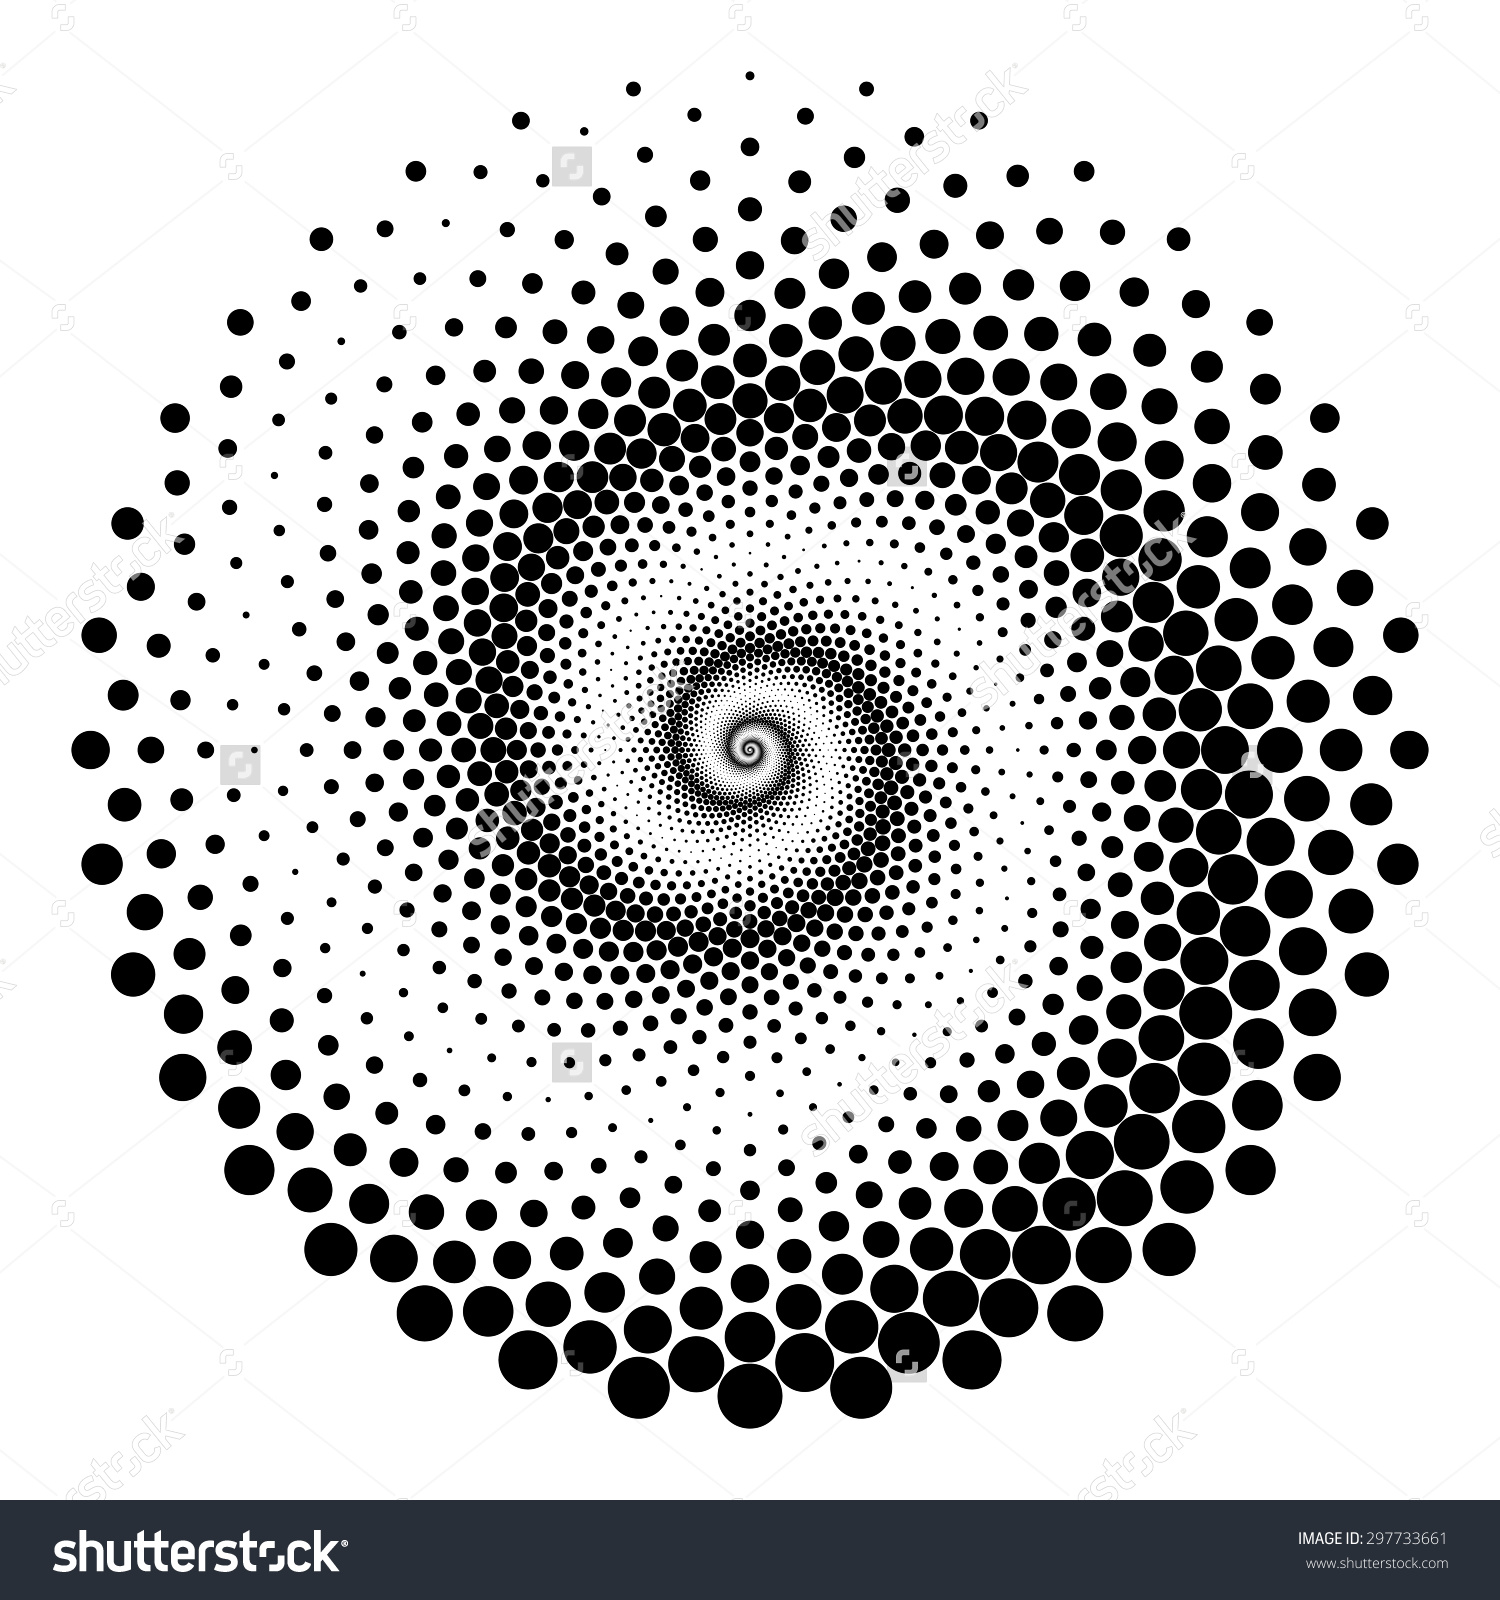 Spiral design photo